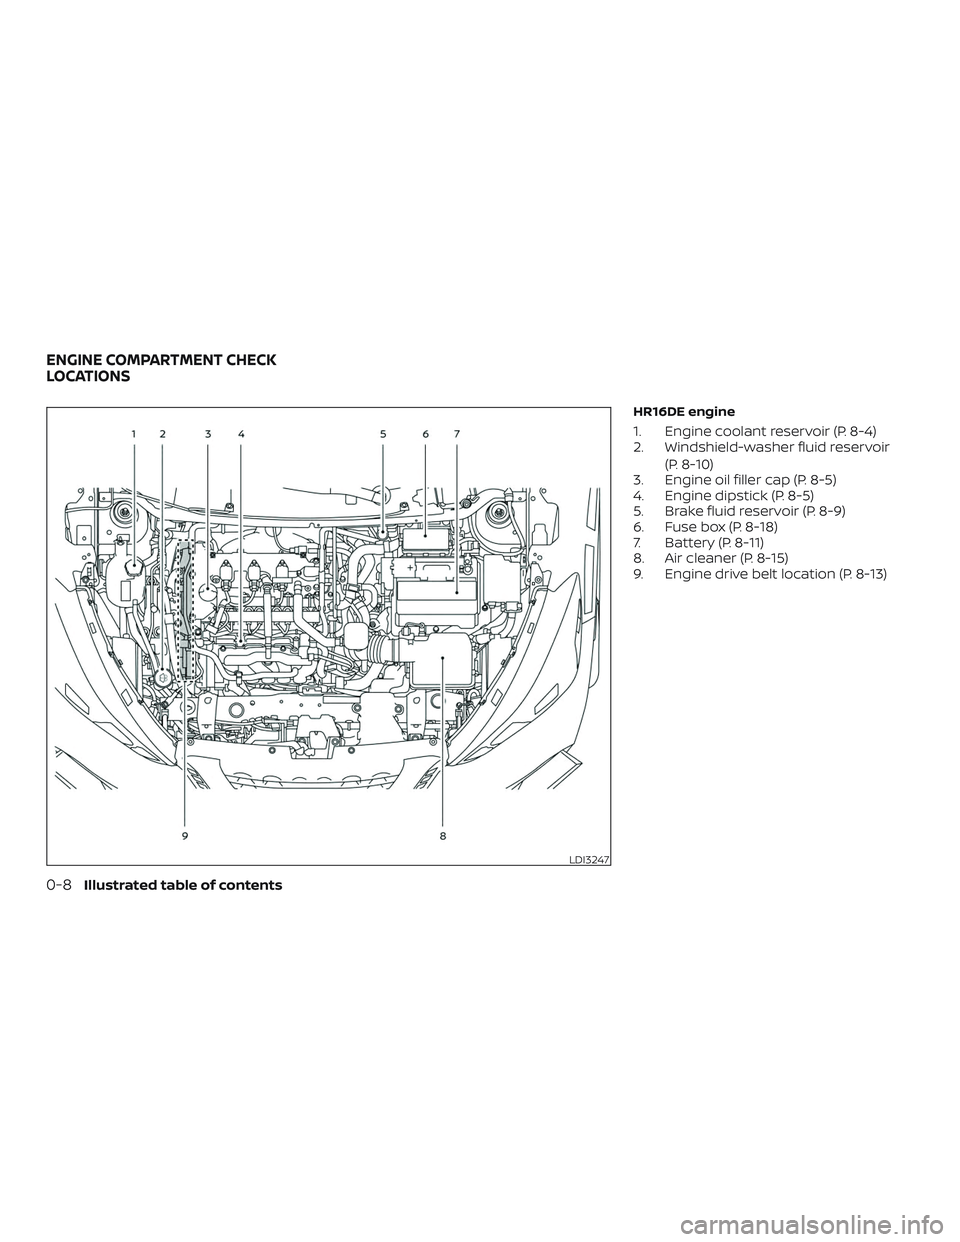 NISSAN LEAF 2018  Owner´s Manual HR16DE engine
1. Engine coolant reservoir (P. 8-4)
2. Windshield-washer fluid reservoir(P. 8-10)
3. Engine oil filler cap (P. 8-5)
4. Engine dipstick (P. 8-5)
5. Brake fluid reservoir (P. 8-9)
6. Fuse